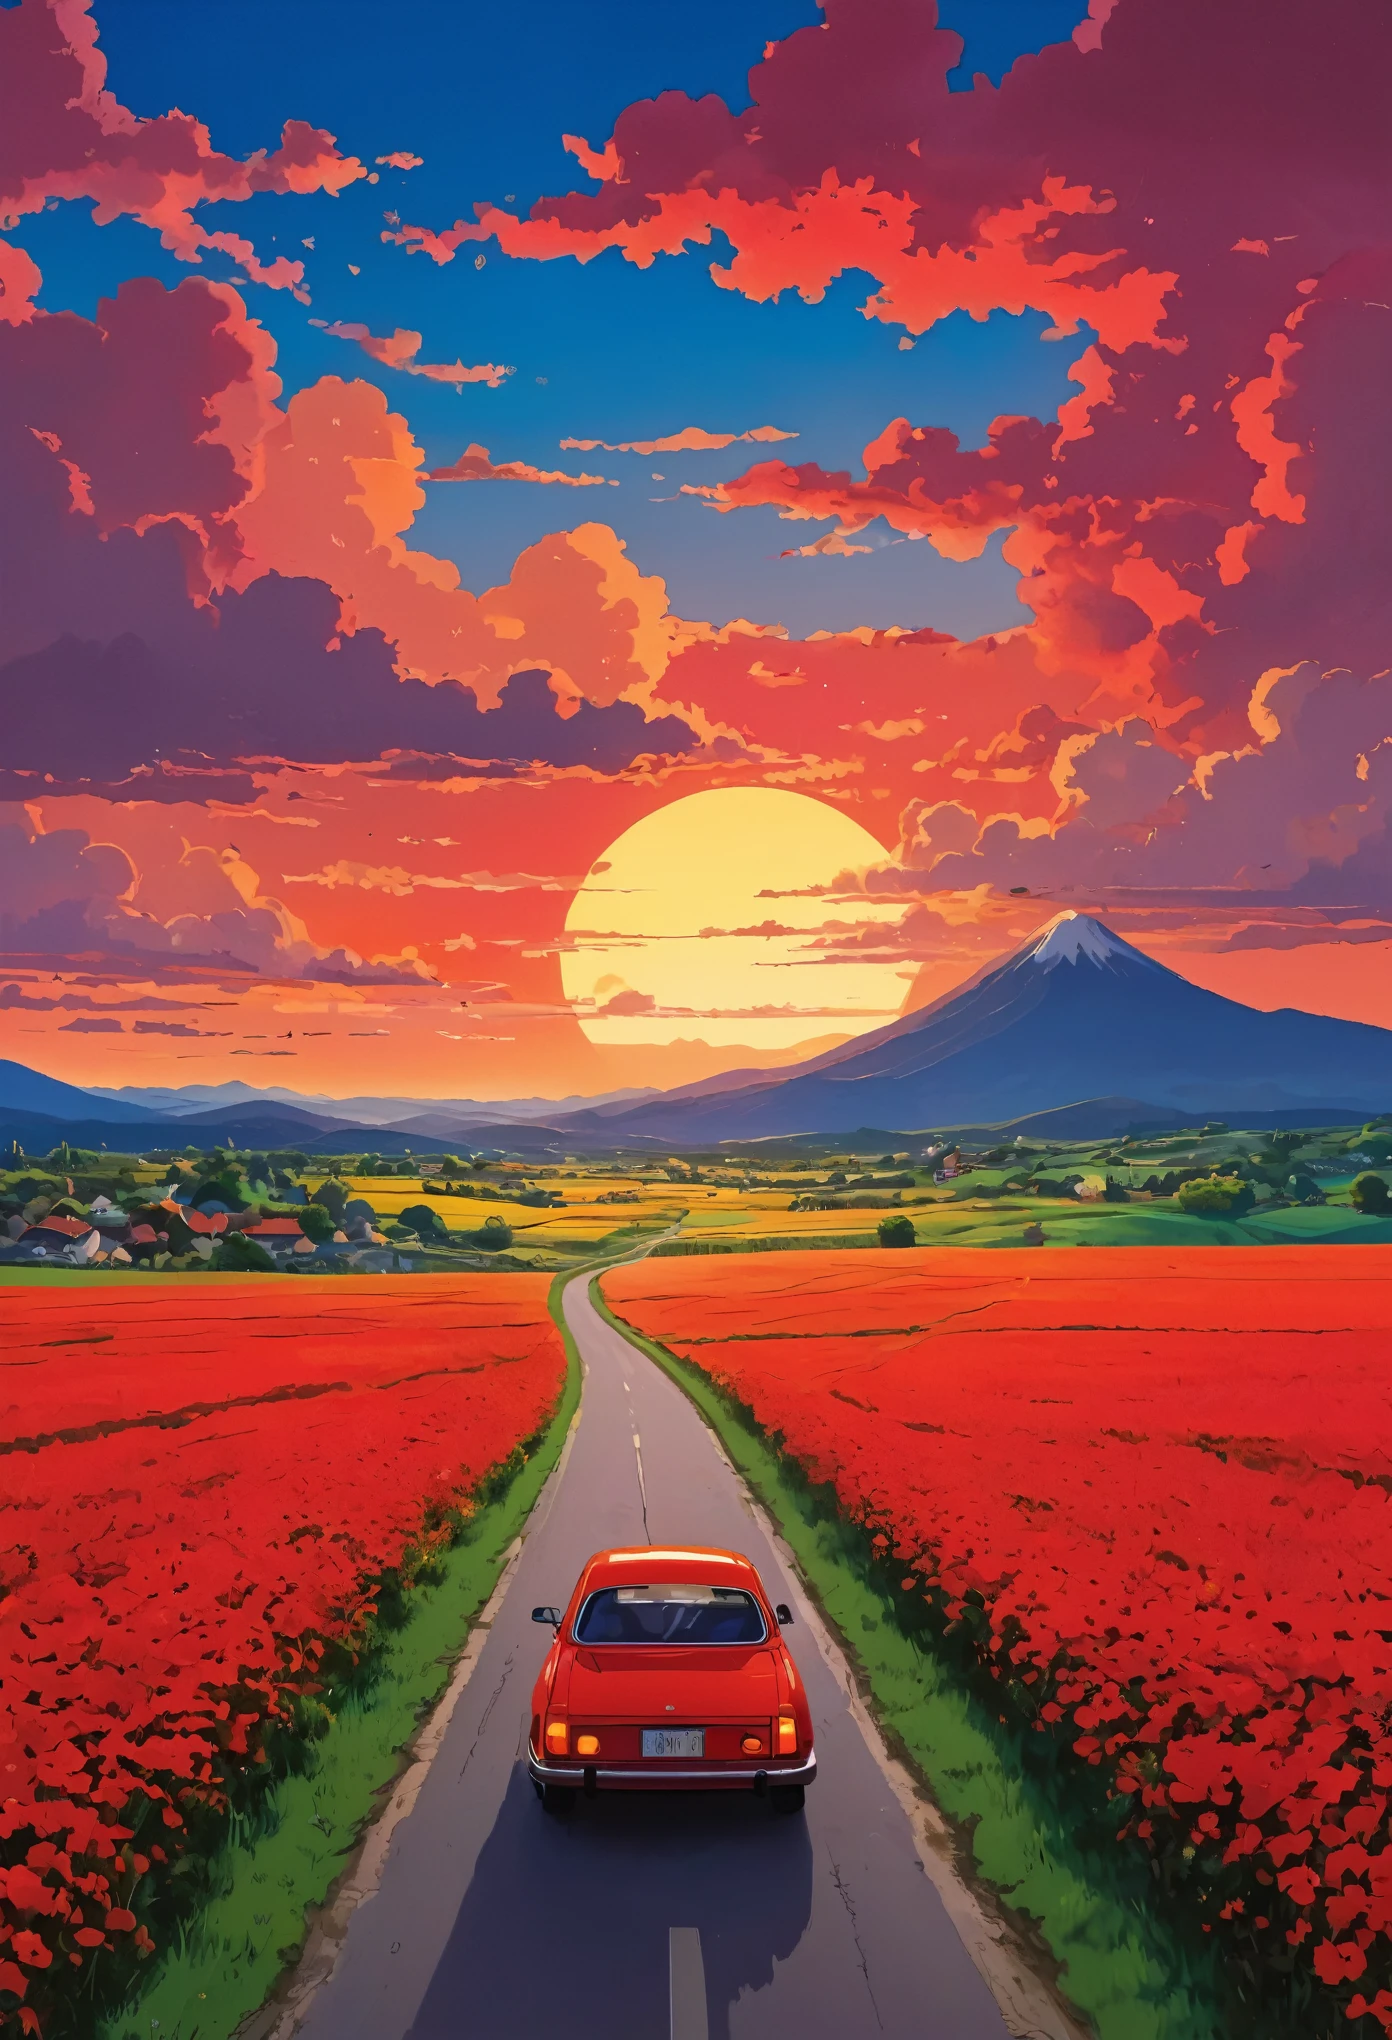 (Minimalismo:1.4), Há um carro vermelho na estrada, Arte do Estúdio Ghibli, Miyazaki, Pasto com céu vermelho e nuvens vermelhas, Vista do pôr do sol, estrada cheia de flores, cores vibrantes 